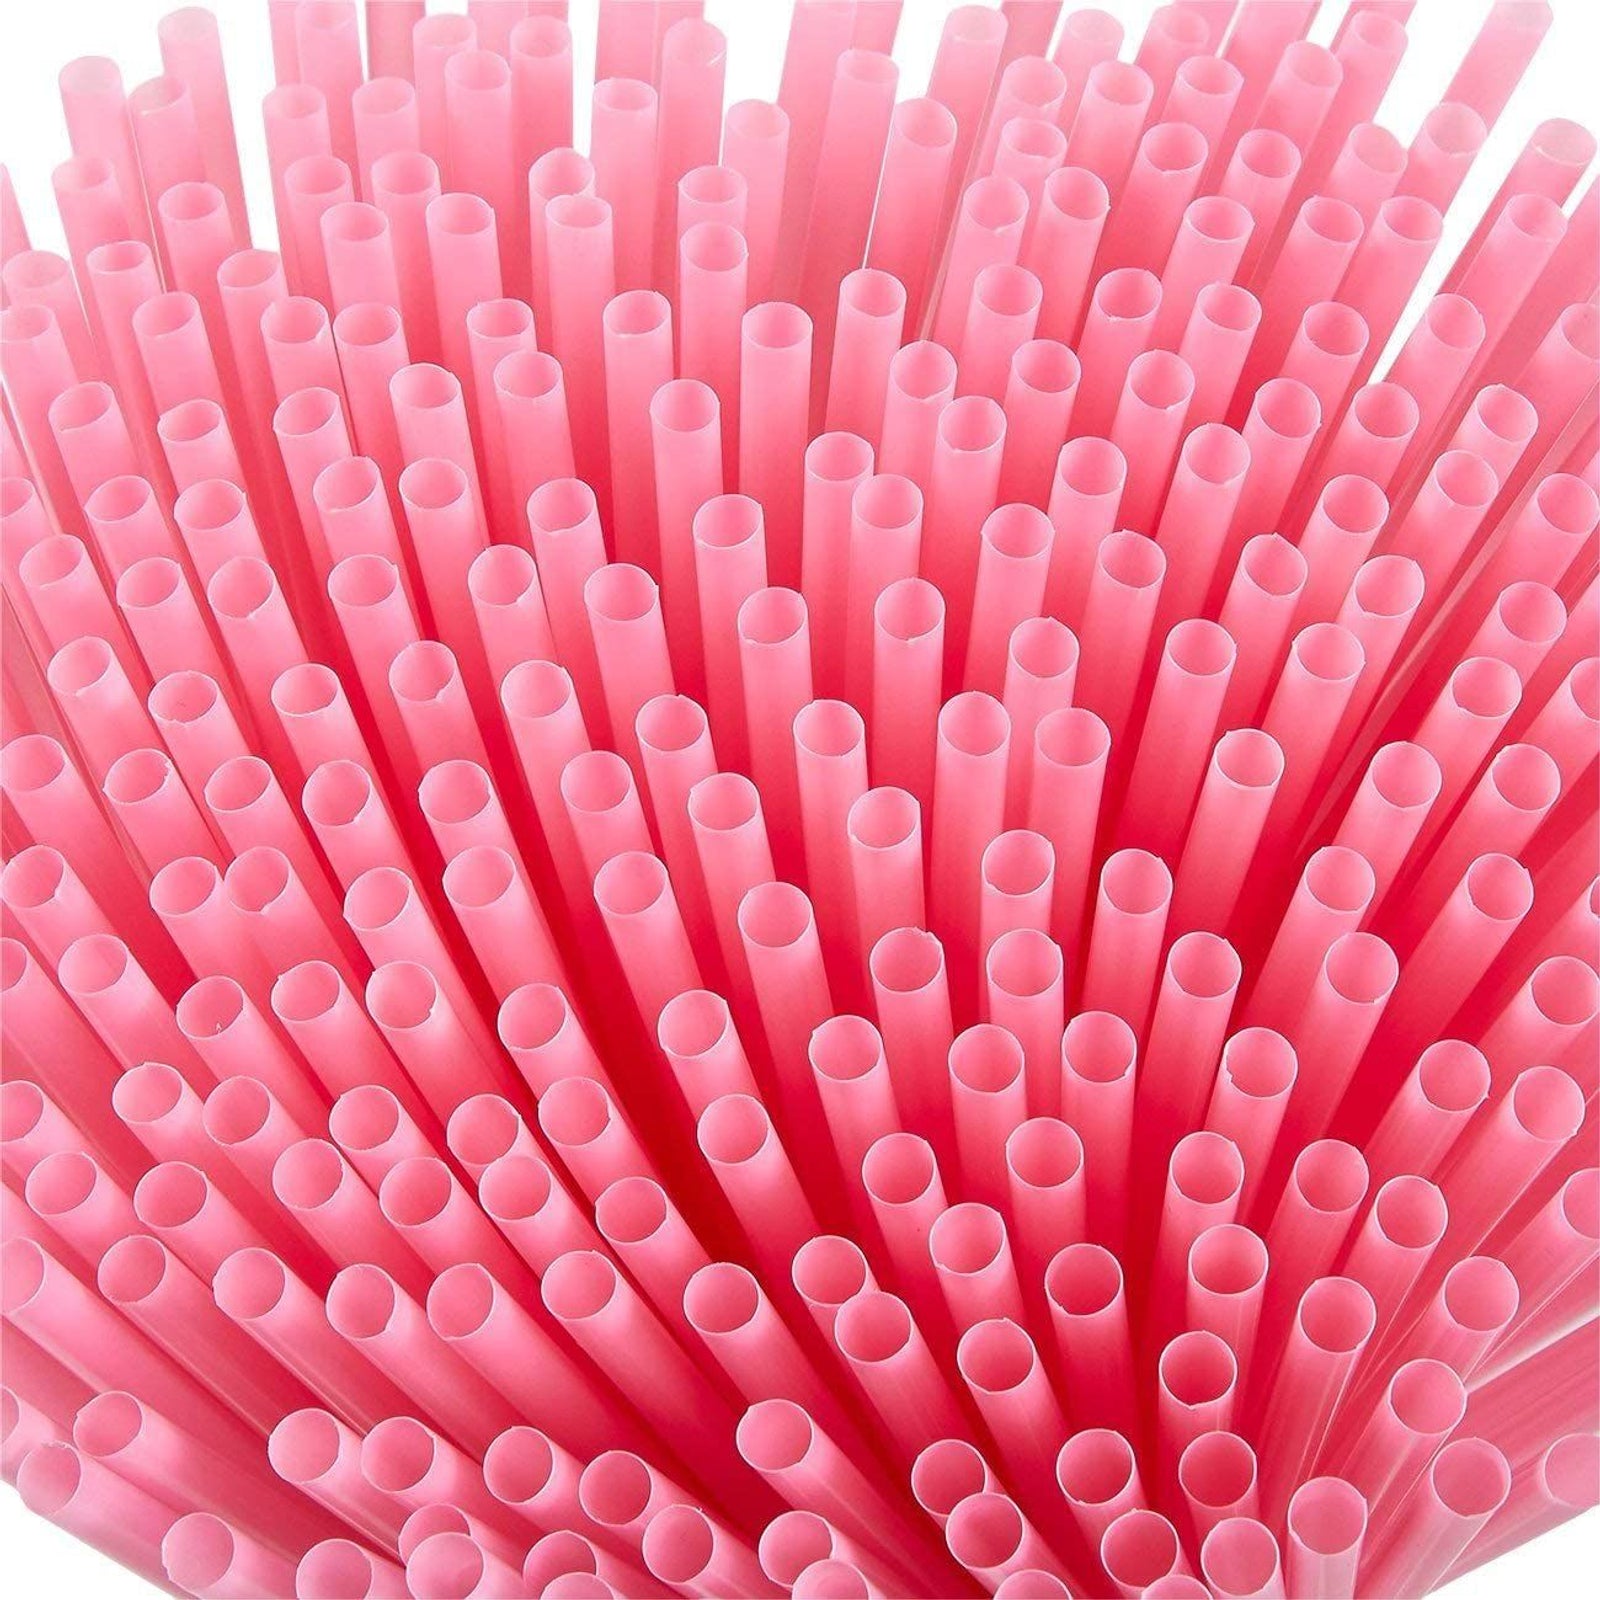 Pajitas de plástico regulares - 100% plástico real